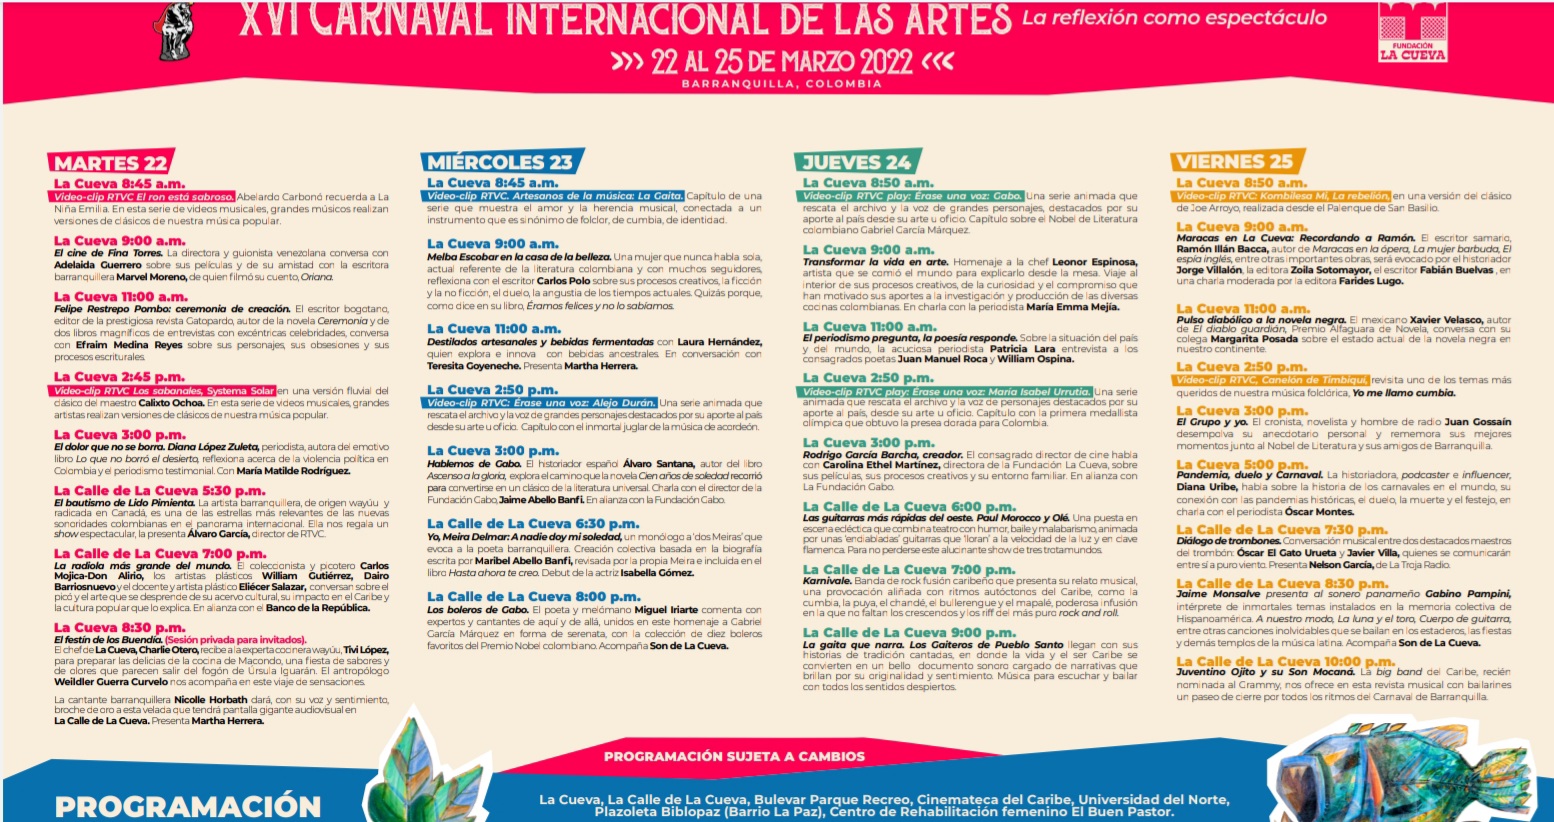 Esta es la programación oficial del XVI Carnaval Internacional de las Artes